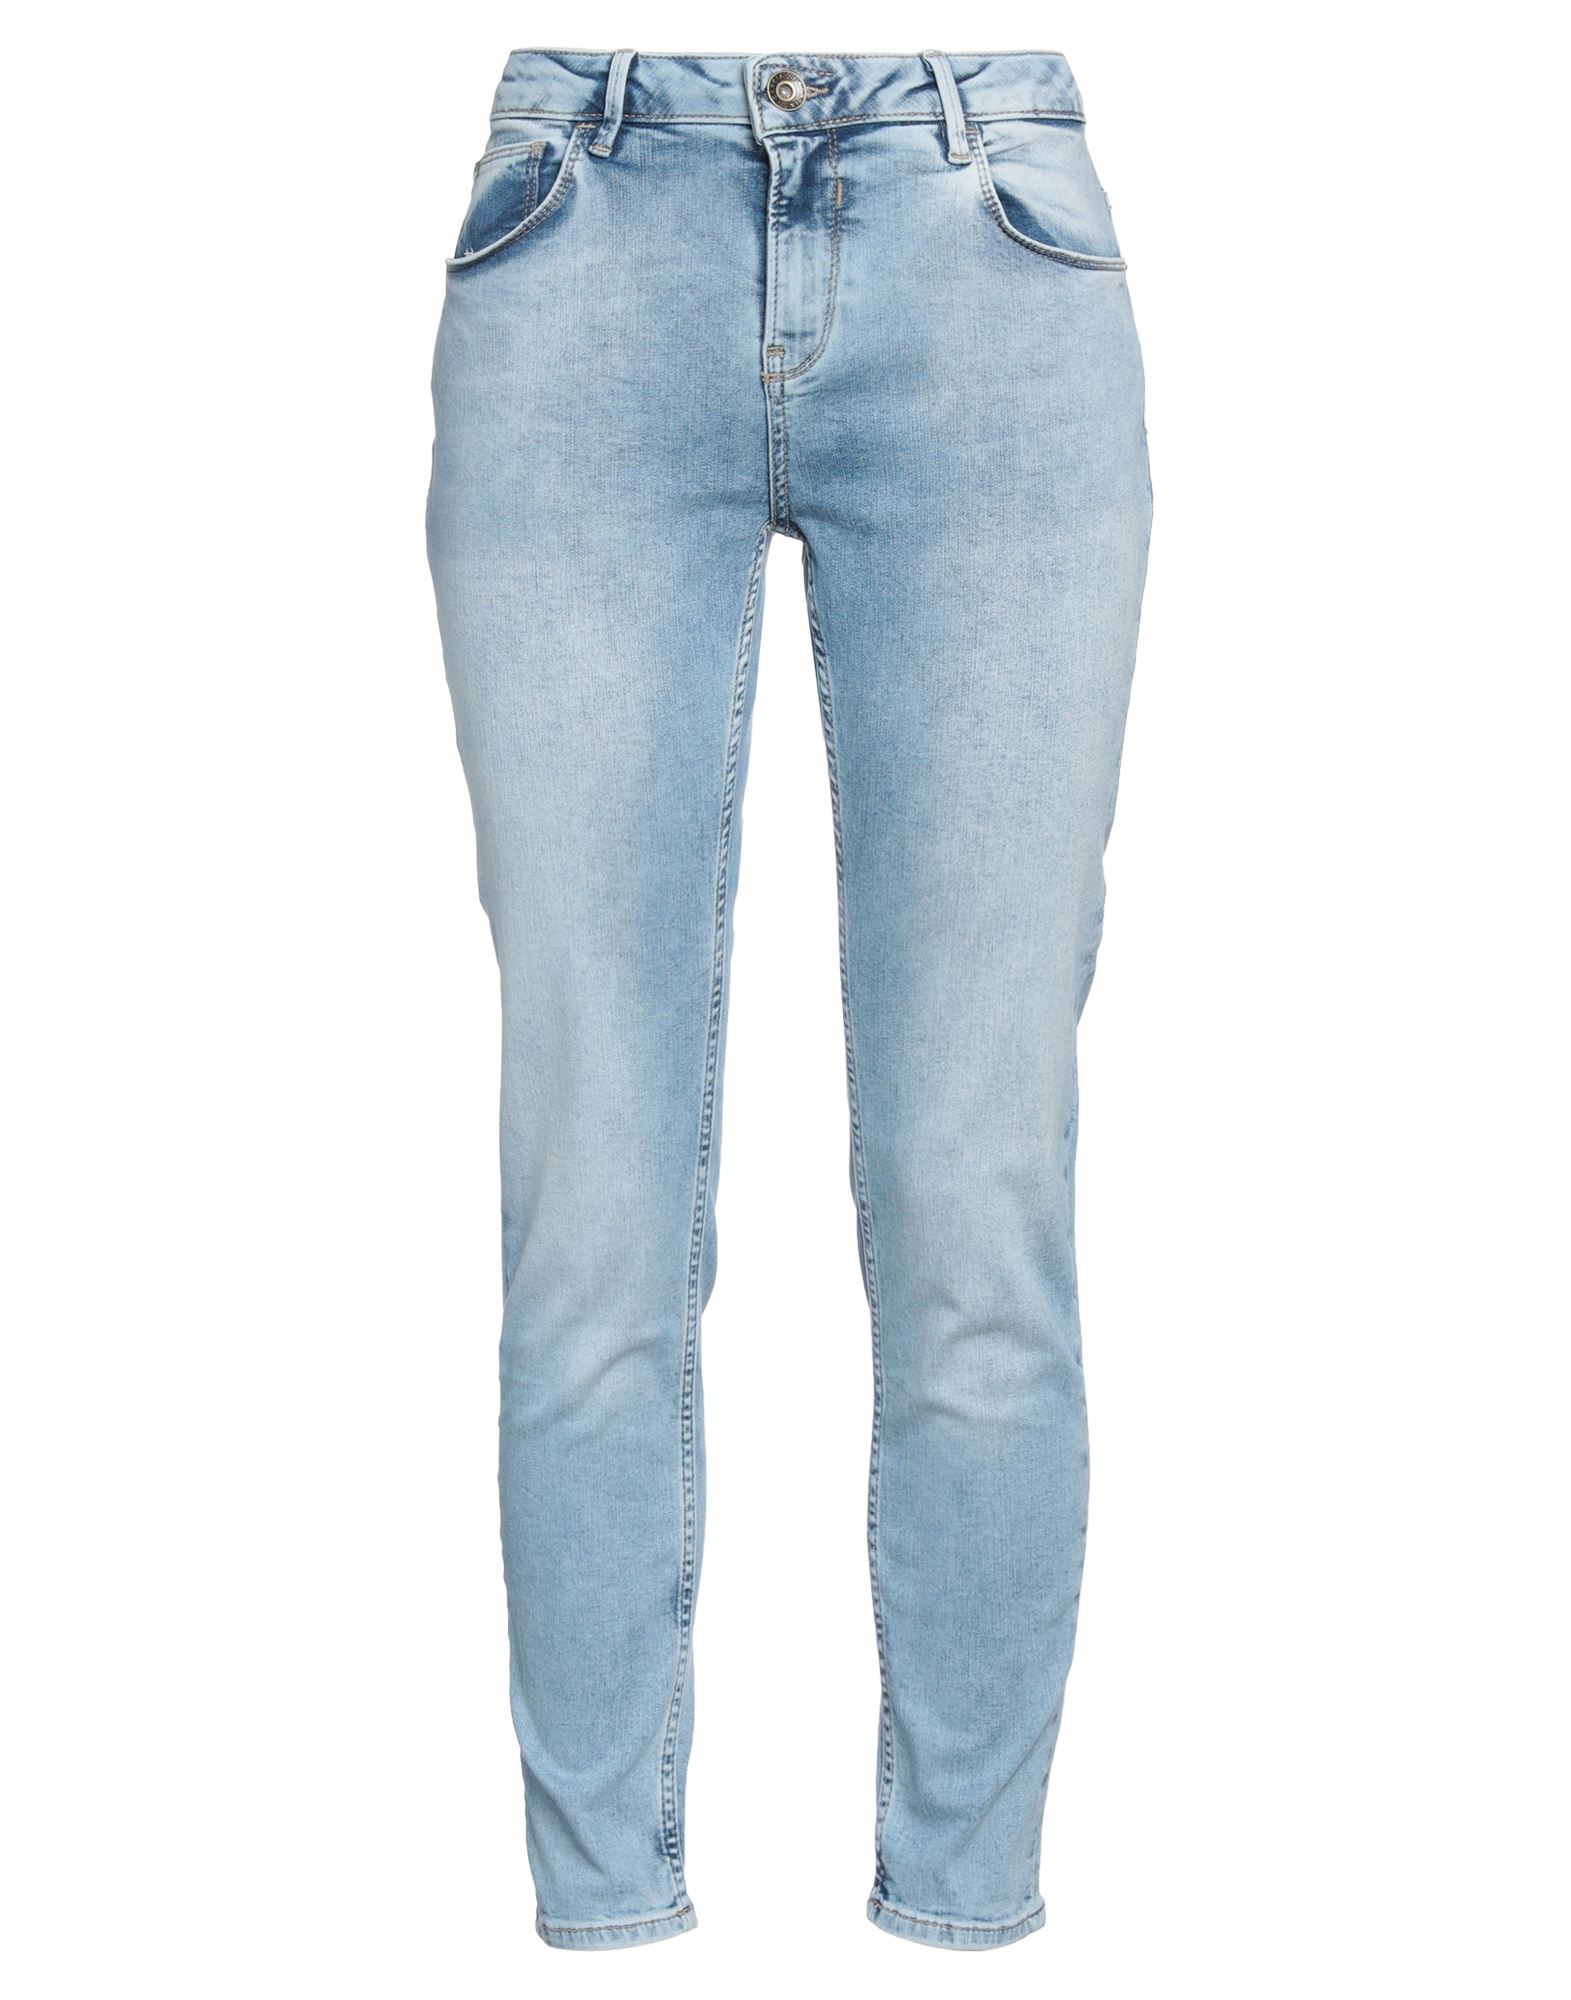 Garcia Woman Jeans Blue Size 26w-28l Cotton, Polyacrylic, Elastane